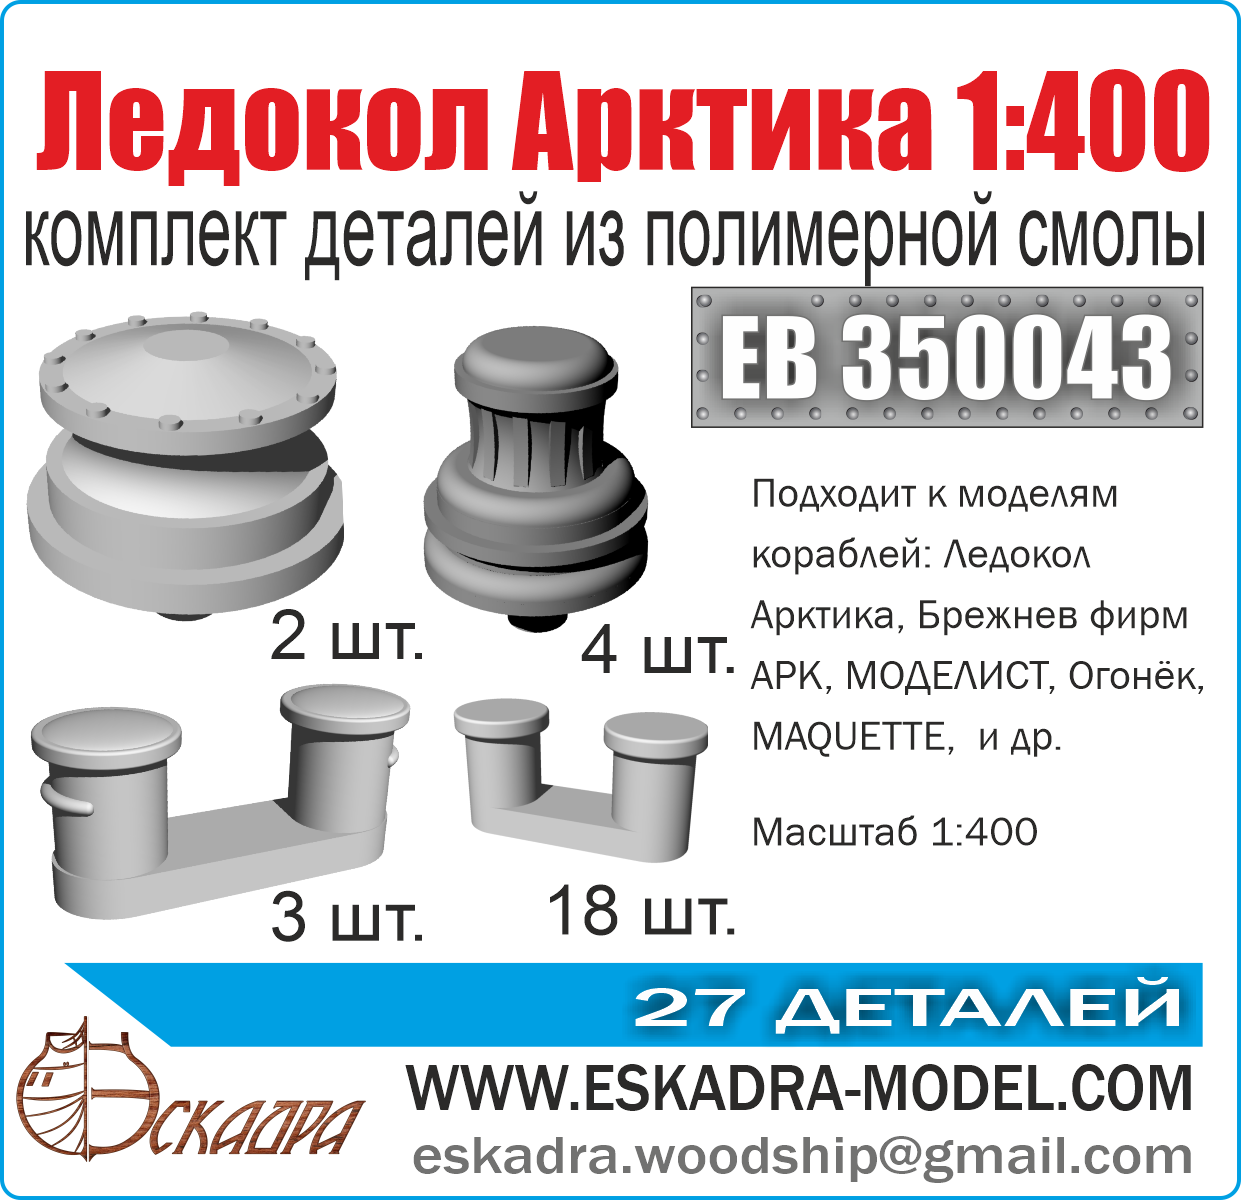 ЕВ350043  дополнения из смолы  Комплект деталей "Ледокол "Арктика"  (1:400)